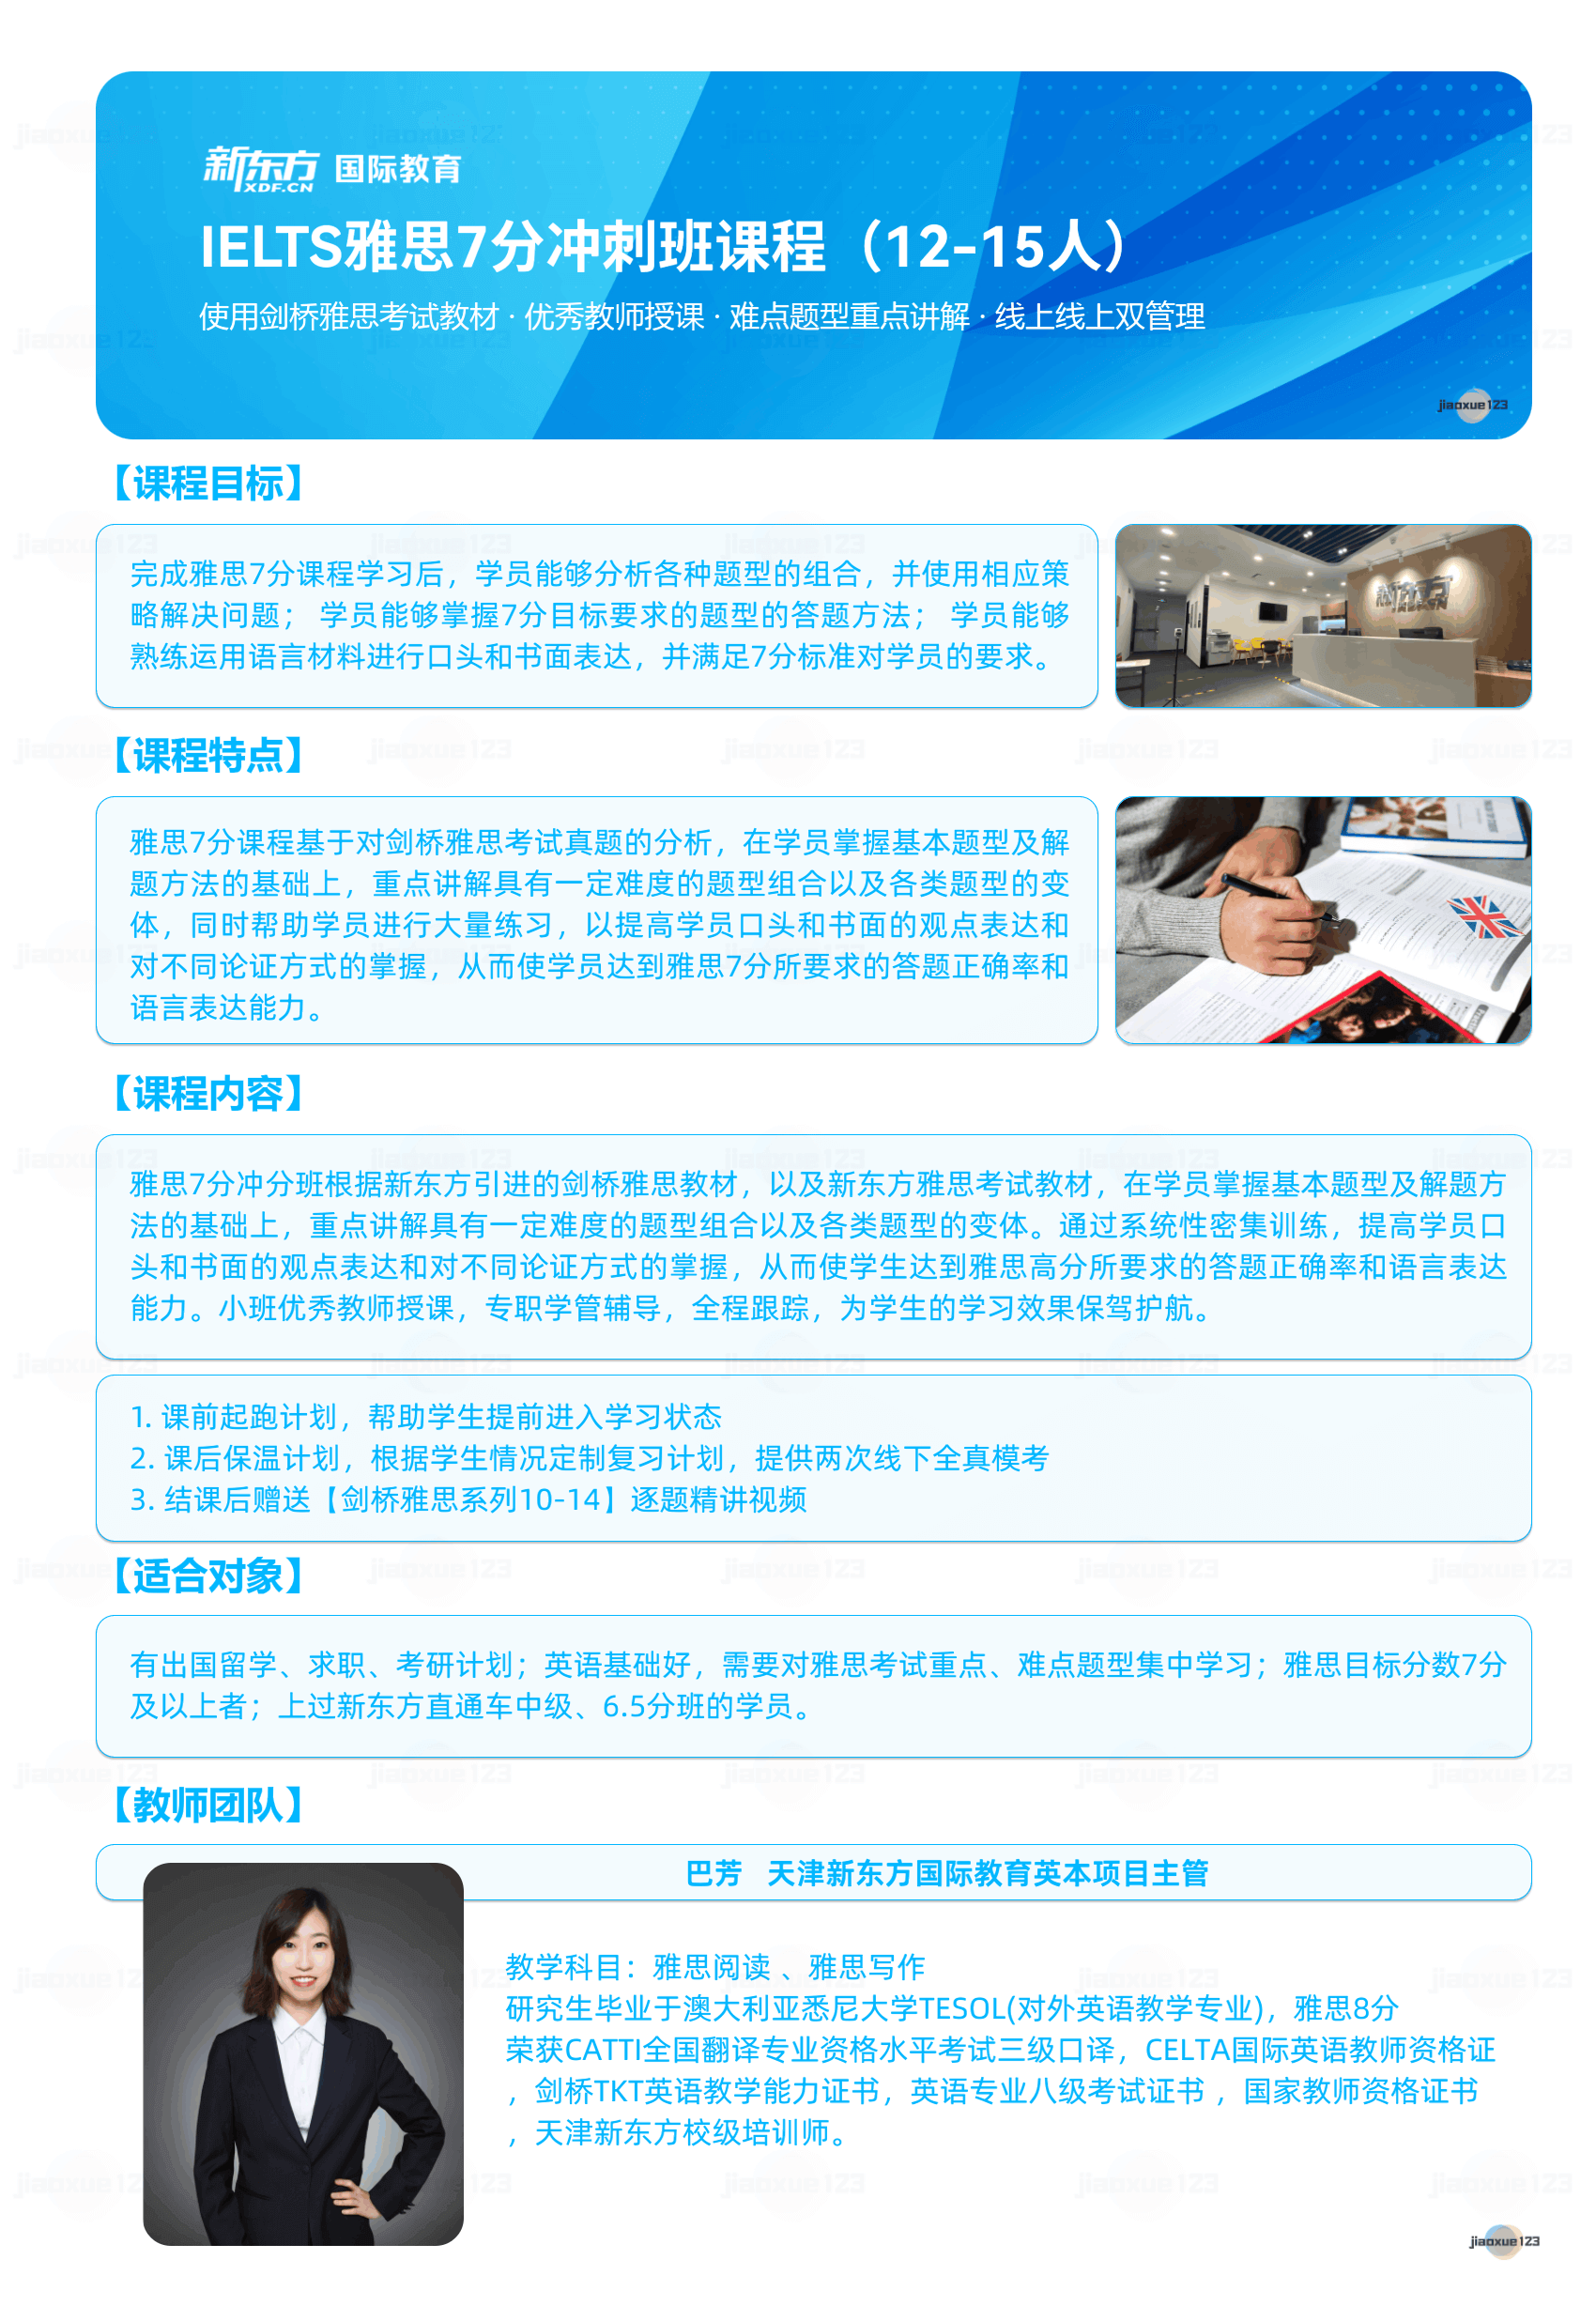 新东方-IELTS雅思7分冲刺班课程详情